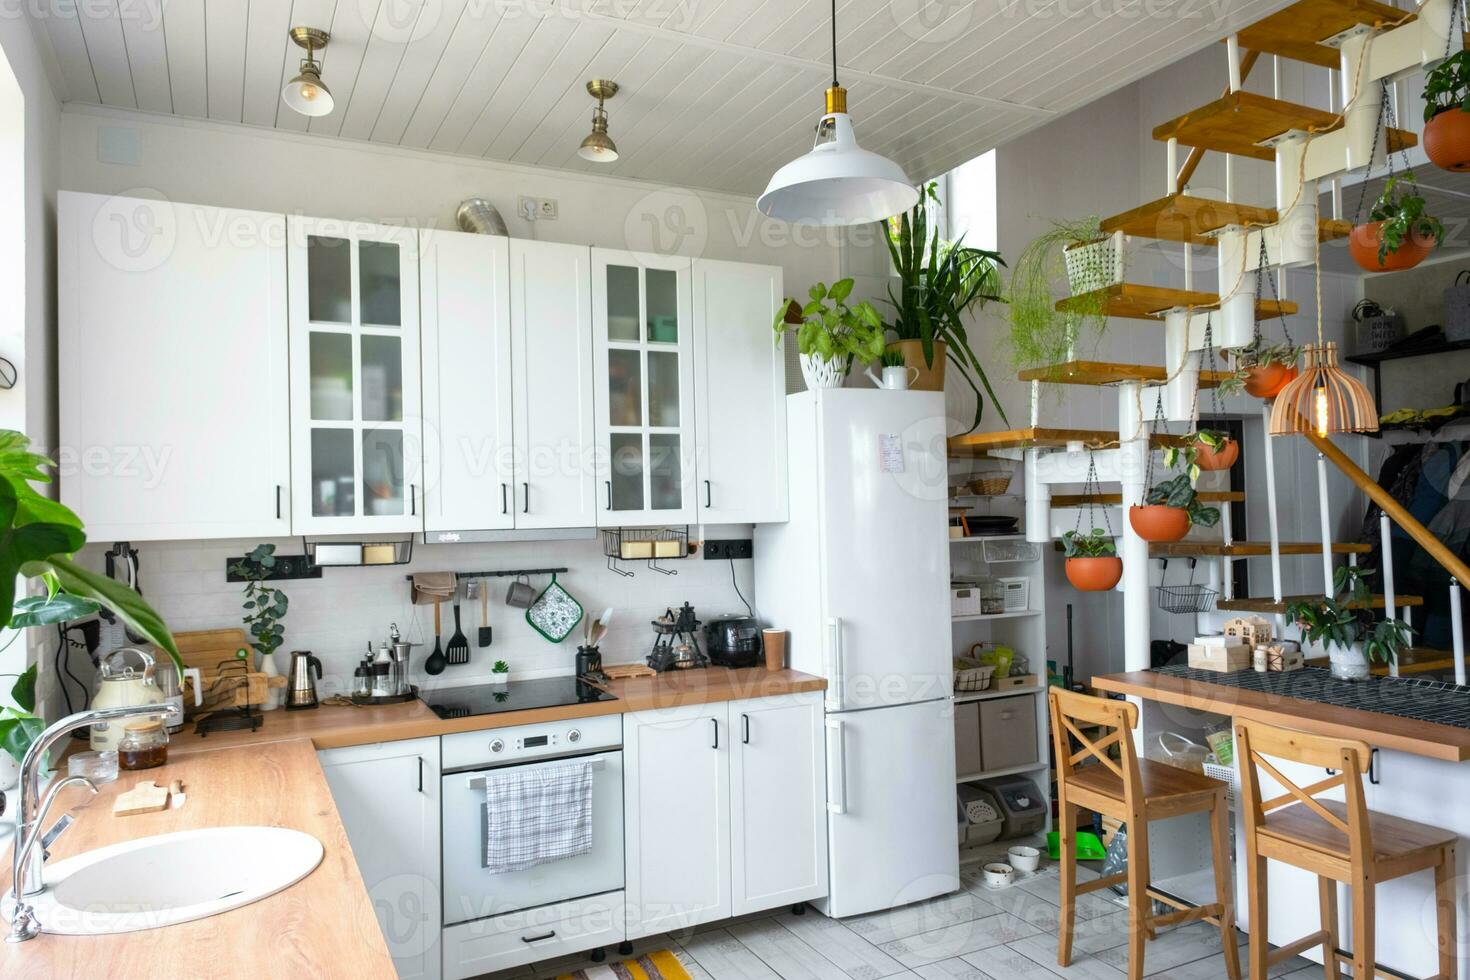 de algemeen plan van een licht wit modern rustiek keuken met een modulair metaal trappenhuis versierd met ingemaakt planten. interieur van een huis met thuisplanten foto